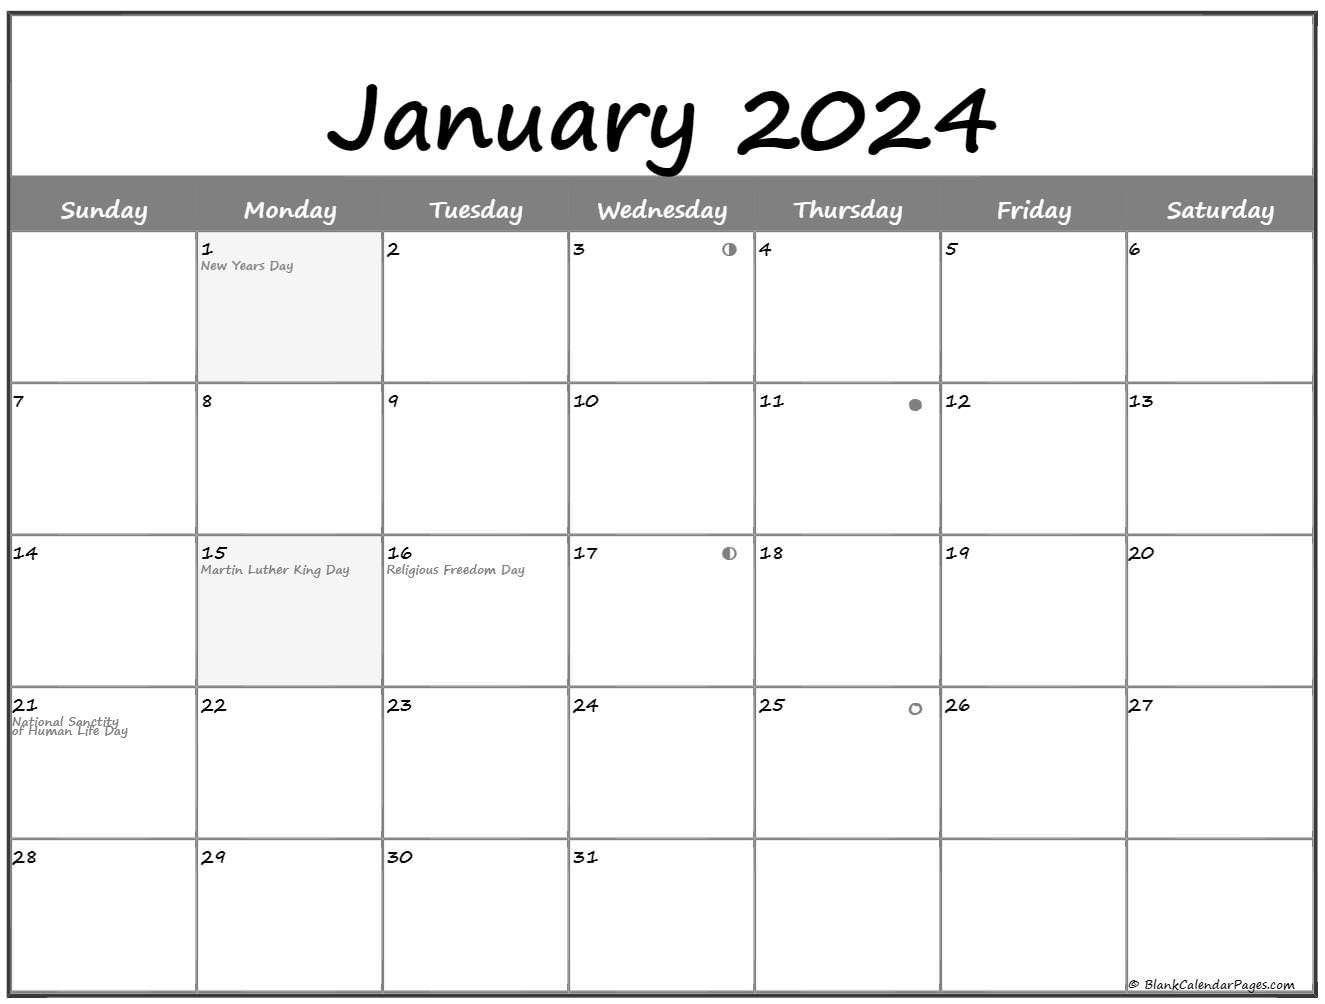 January 2019 Lunar Calendar | Moon Phase Calendar